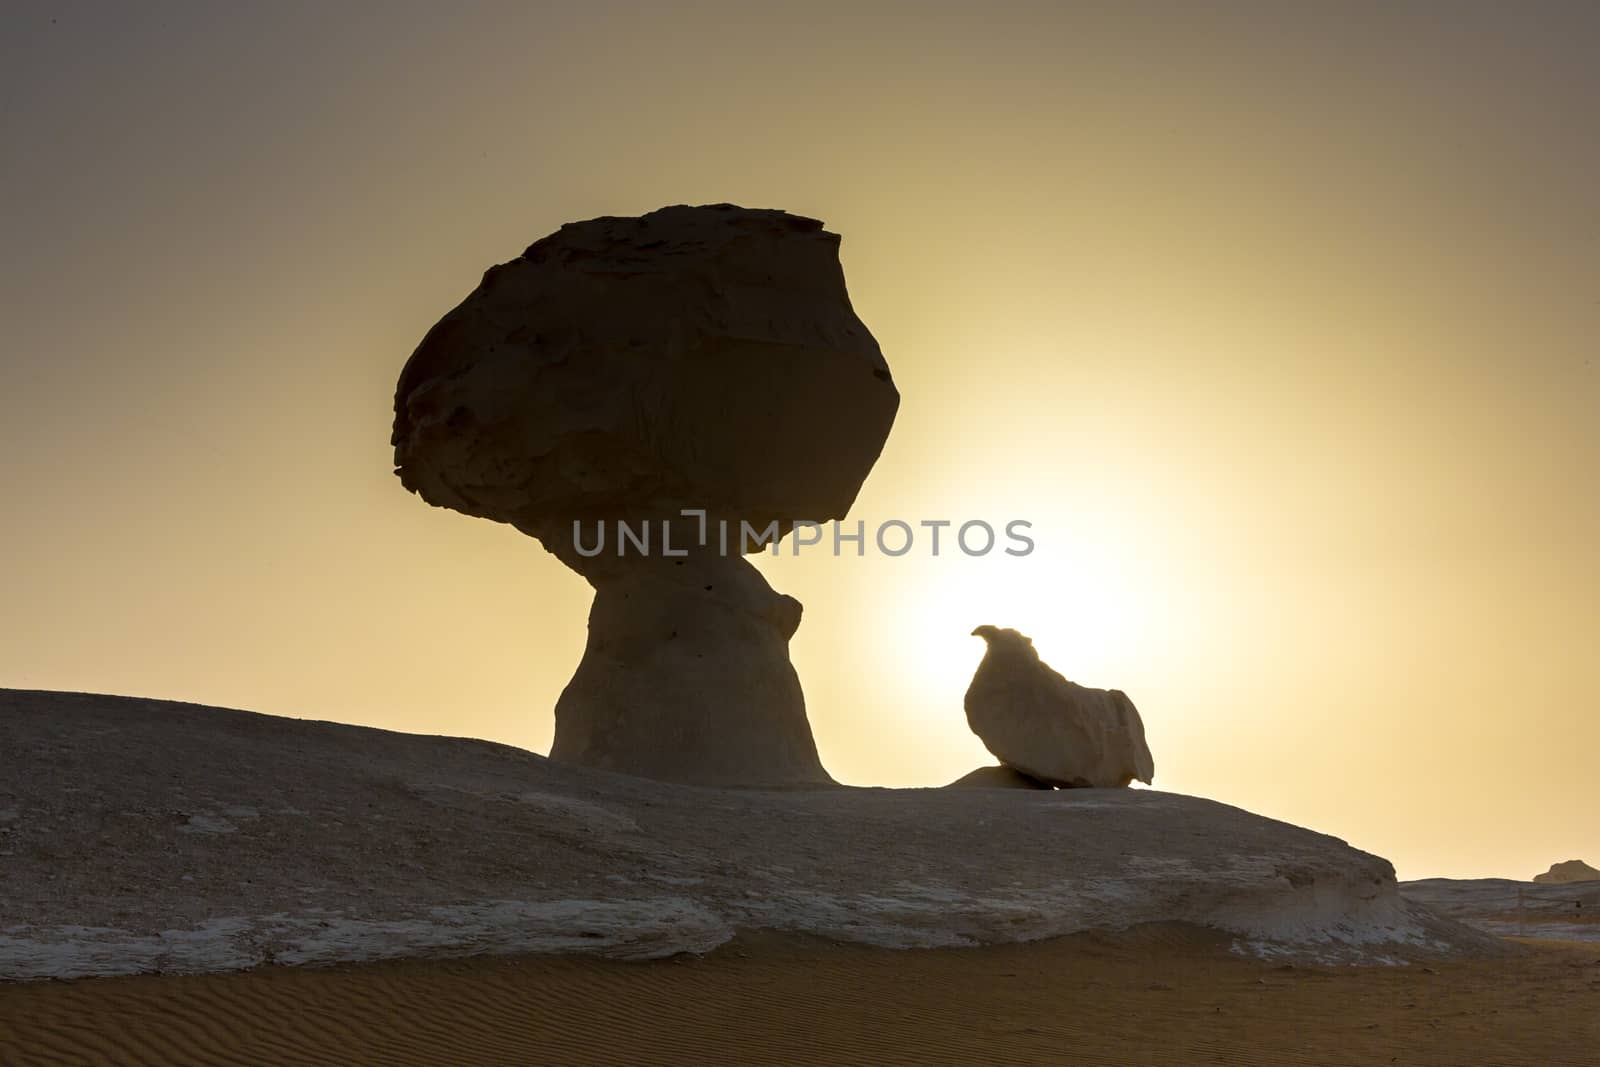 White Desert at Farafra in the Sahara of Egypt. Africa. by SeuMelhorClick